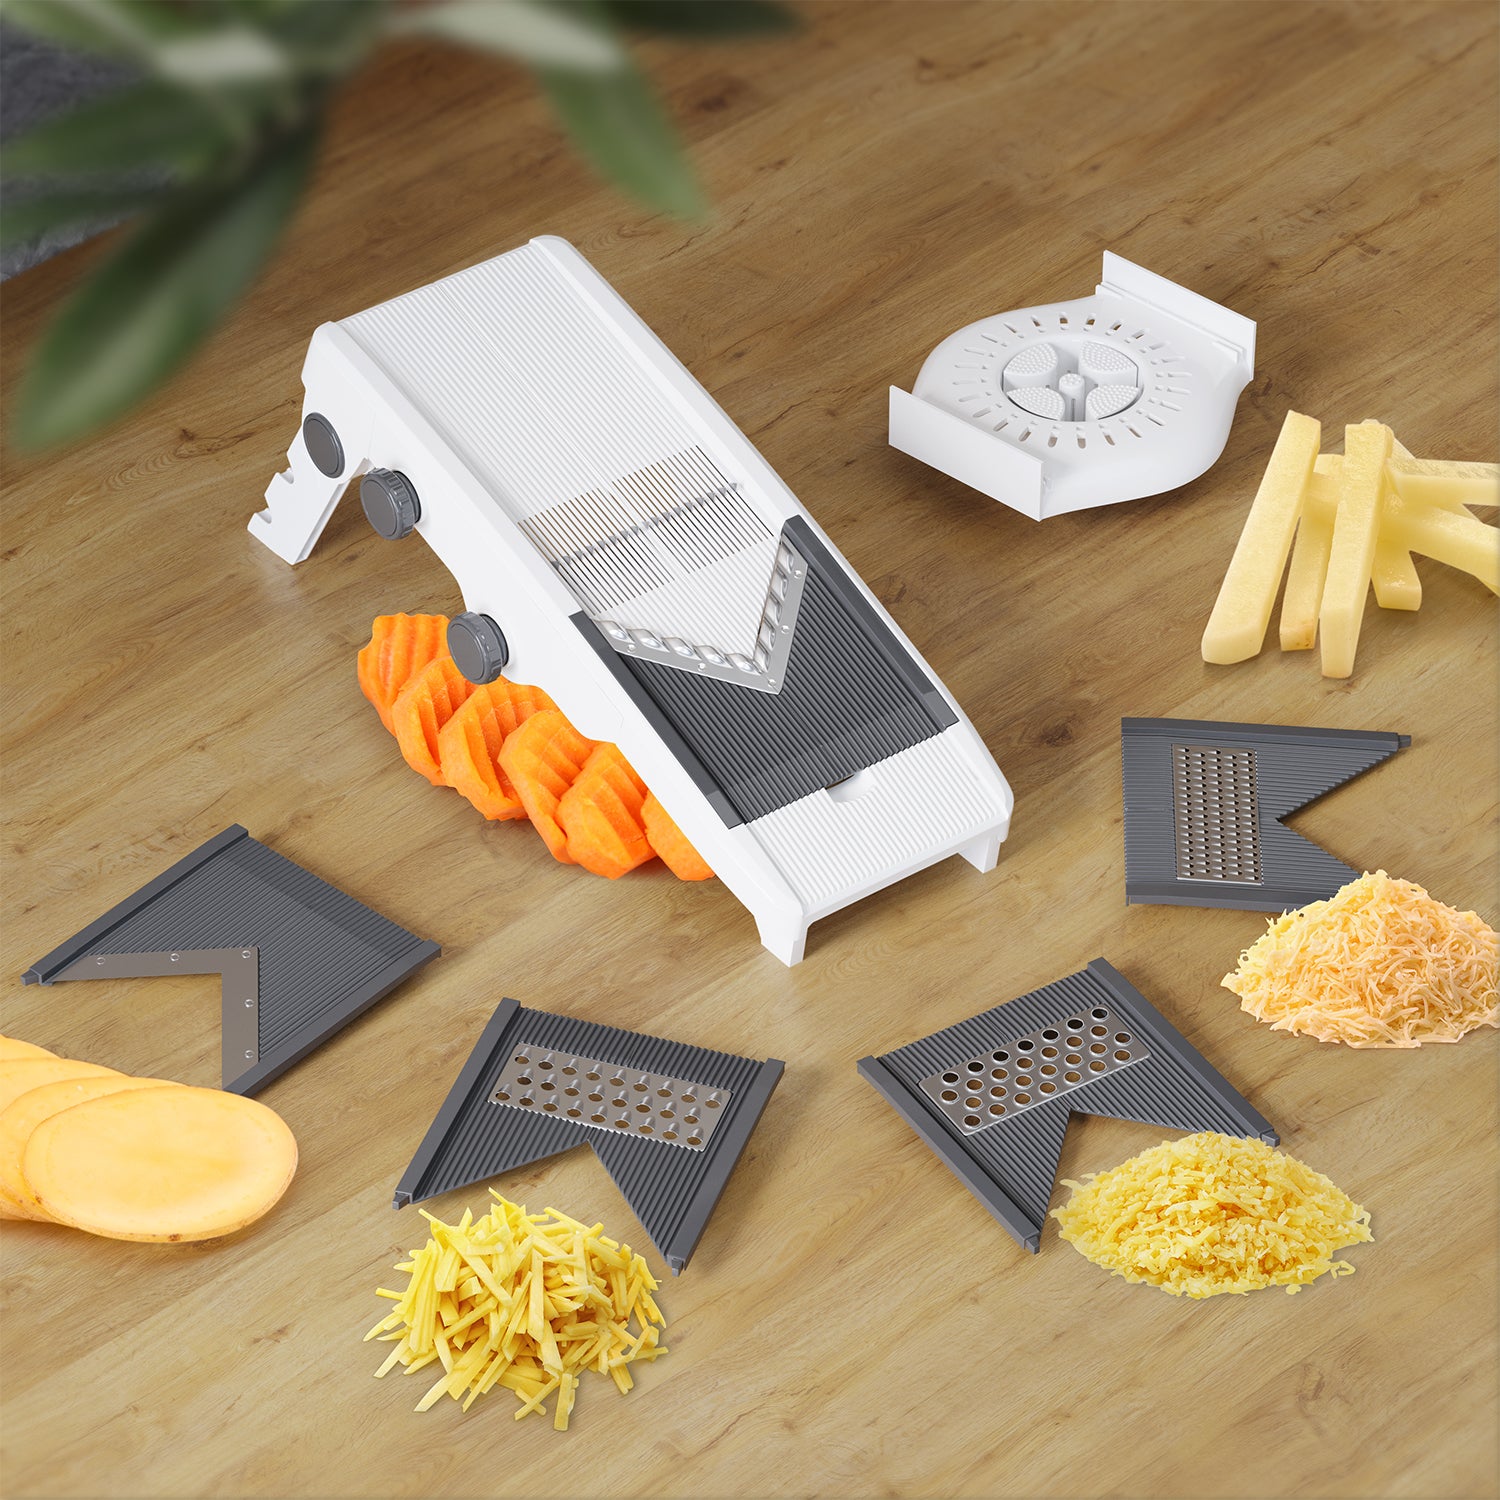 Adjustable Mandoline Slicer For Kitchen,Ultra Sharp V-Blade Vegetable  Slicer With Container,Slicer Vegetable Cutter,Julienne Slicer, Potato  Slicer For